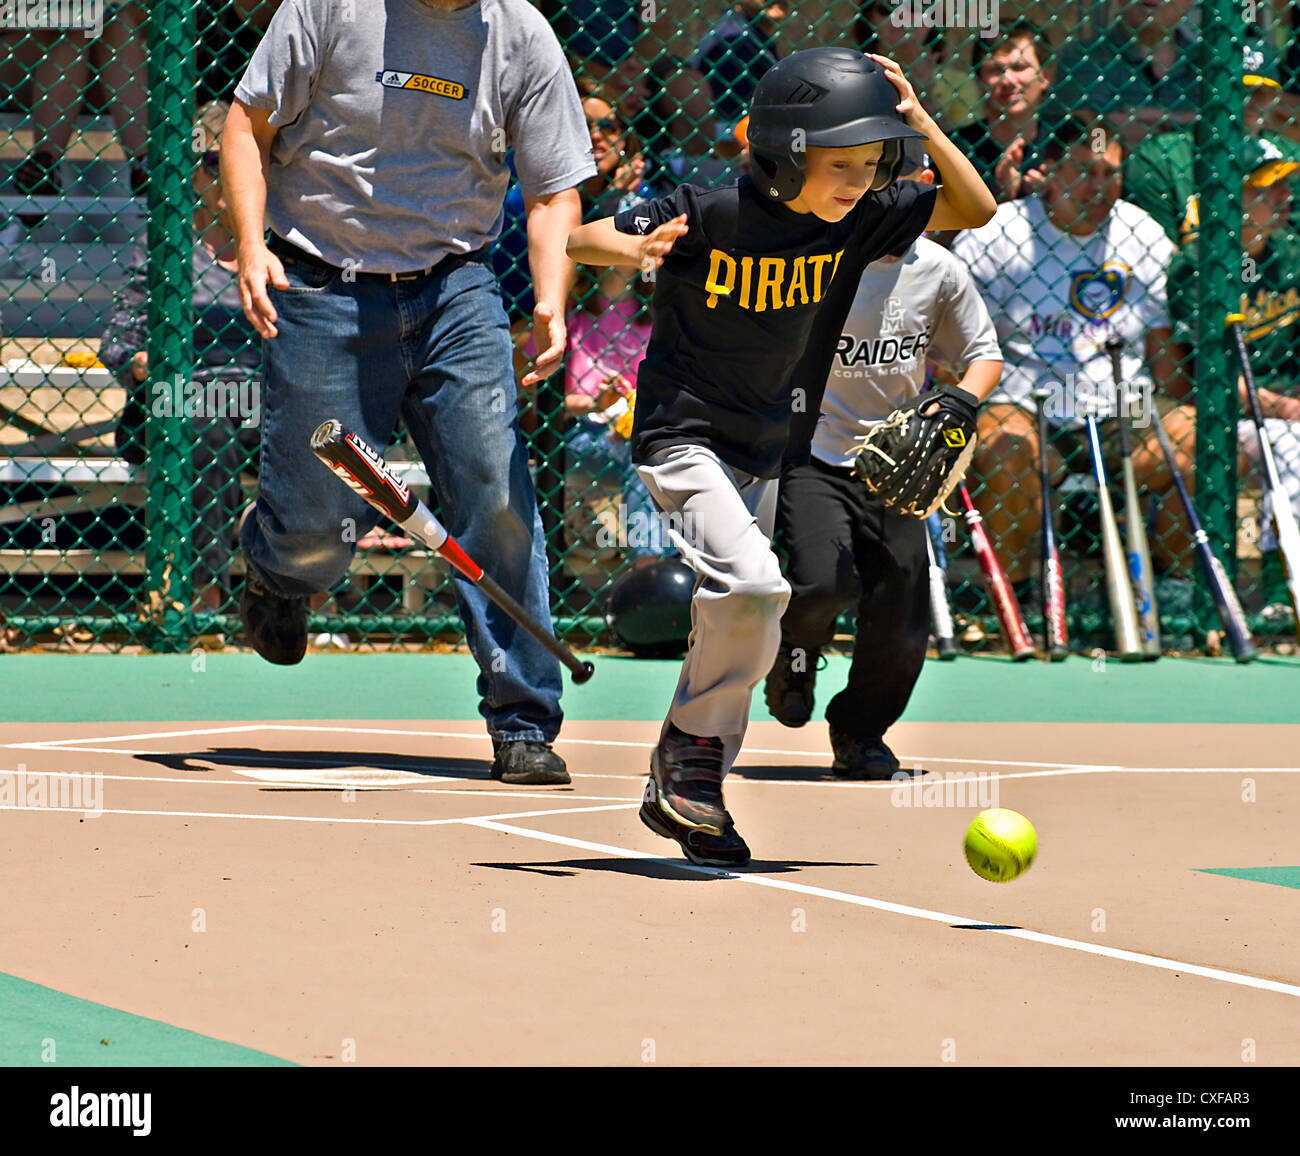 Ein kleiner Junge, fallen die Fledermaus zur ersten Base laufen nach, einen Hit in eine Wunder-Liga Softball-Spiel. Stockfoto